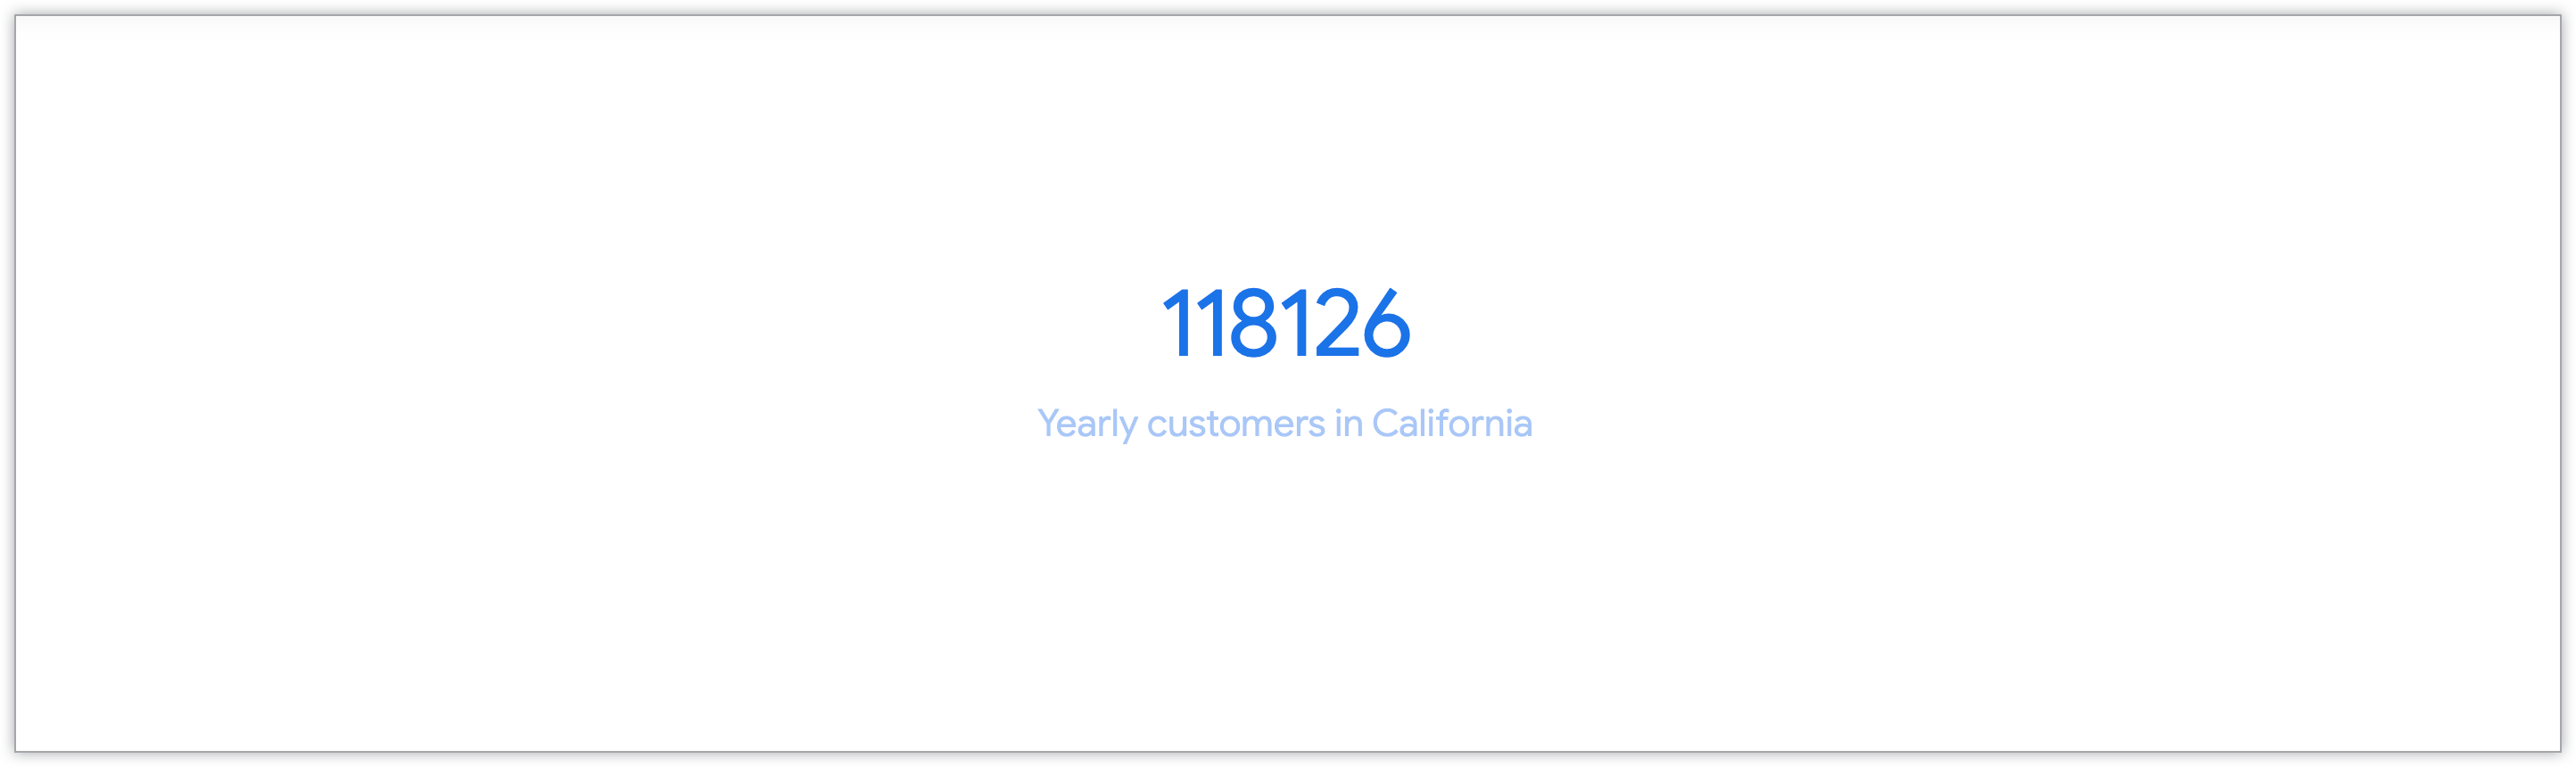 单个价值图表，显示了加利福尼亚州的年客户数量。